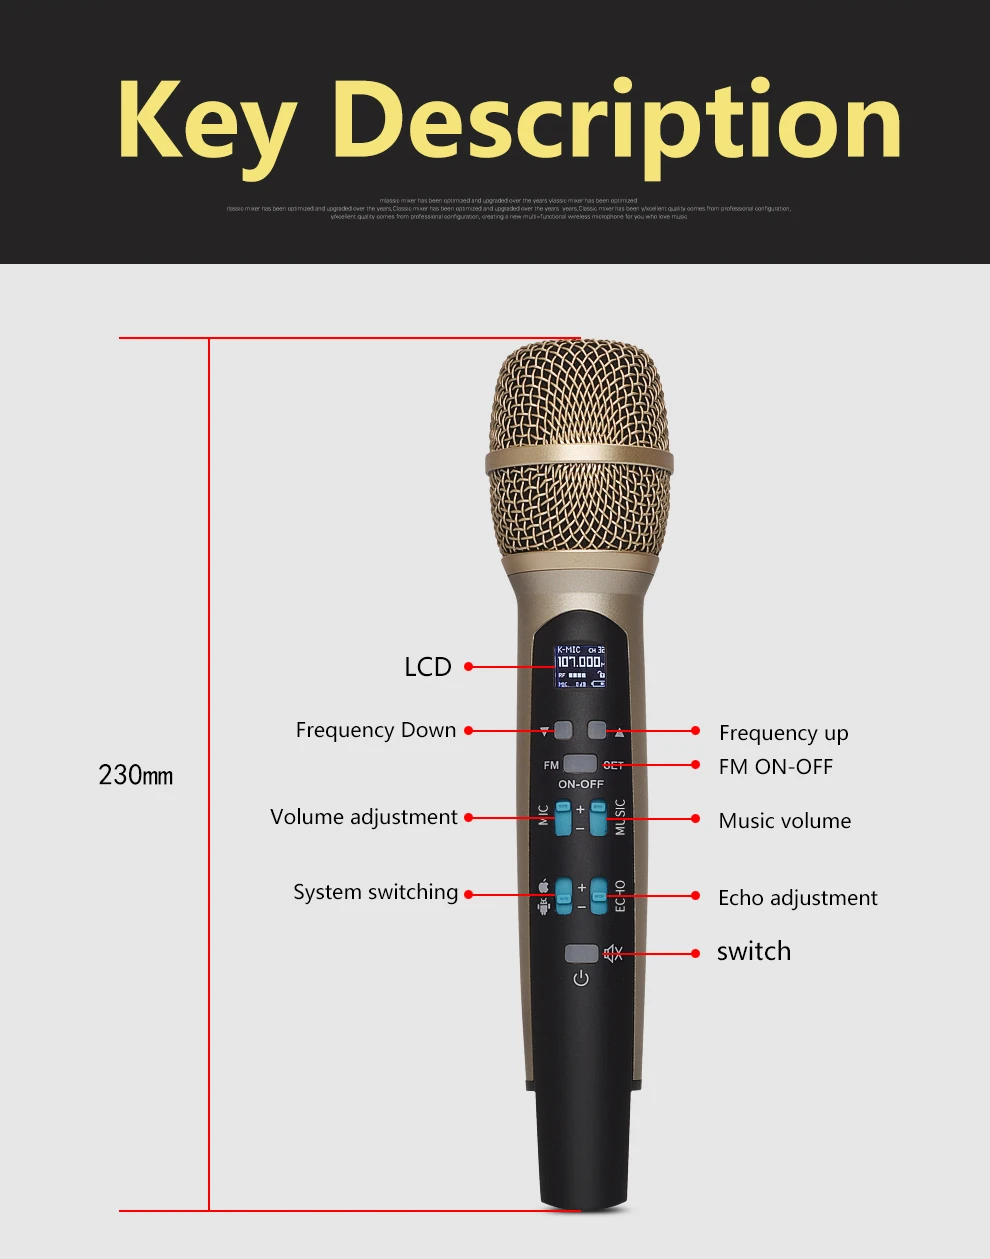 TKL MIC100 беспроводной автомобильный микрофон для караоке FM Bluetooth конденсаторный микрофонный микрофон совместимый с Iphone компьютером